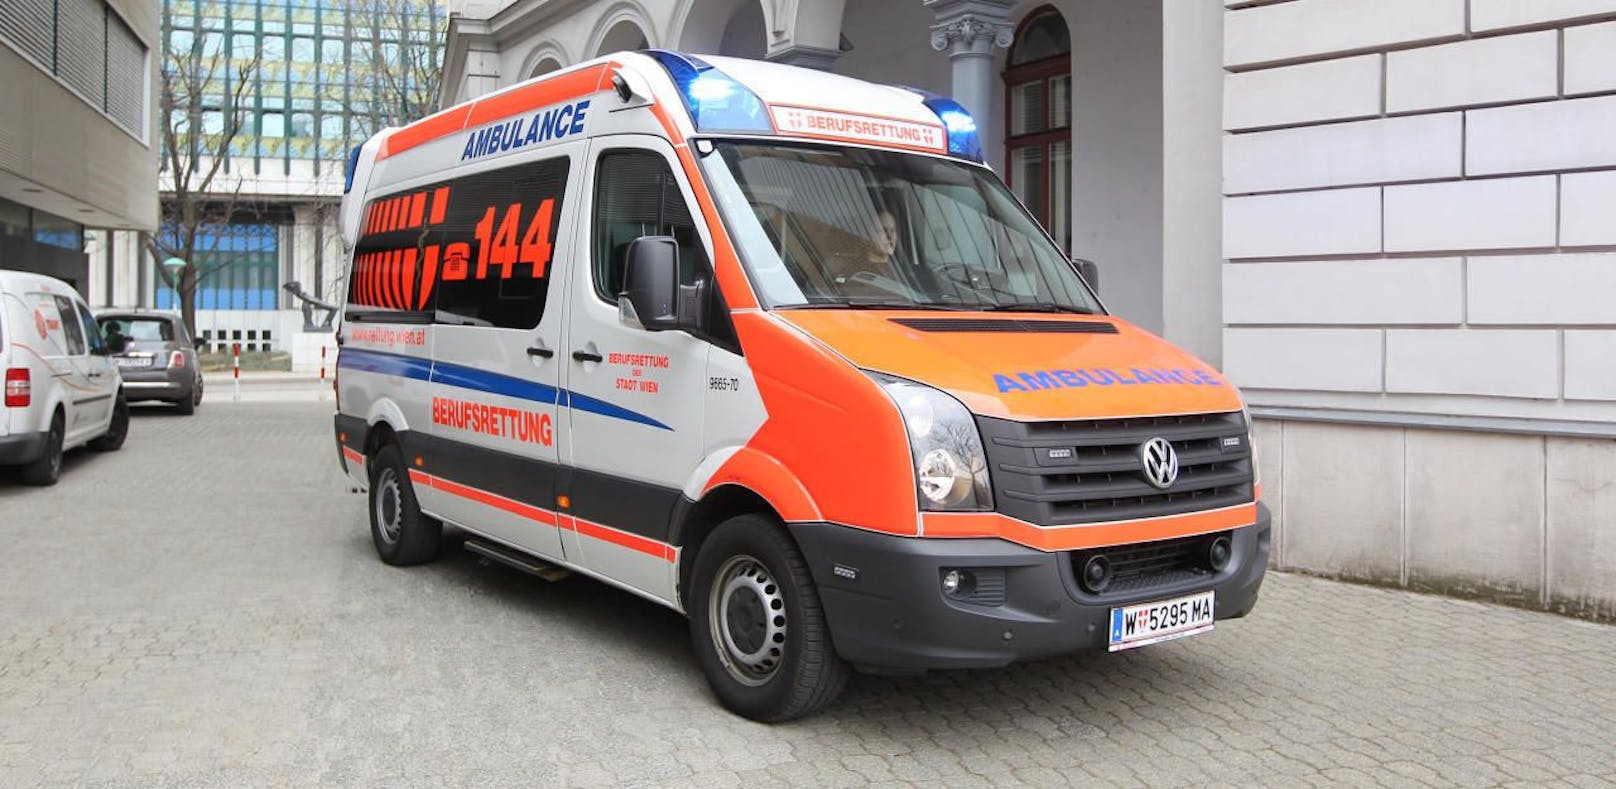 Die Berufsrettung Wien versuchte, die 53-Jährige zu reanimieren. Die Frau starb am Unfallort an ihren schweren Verletzungen (Symbolfoto).